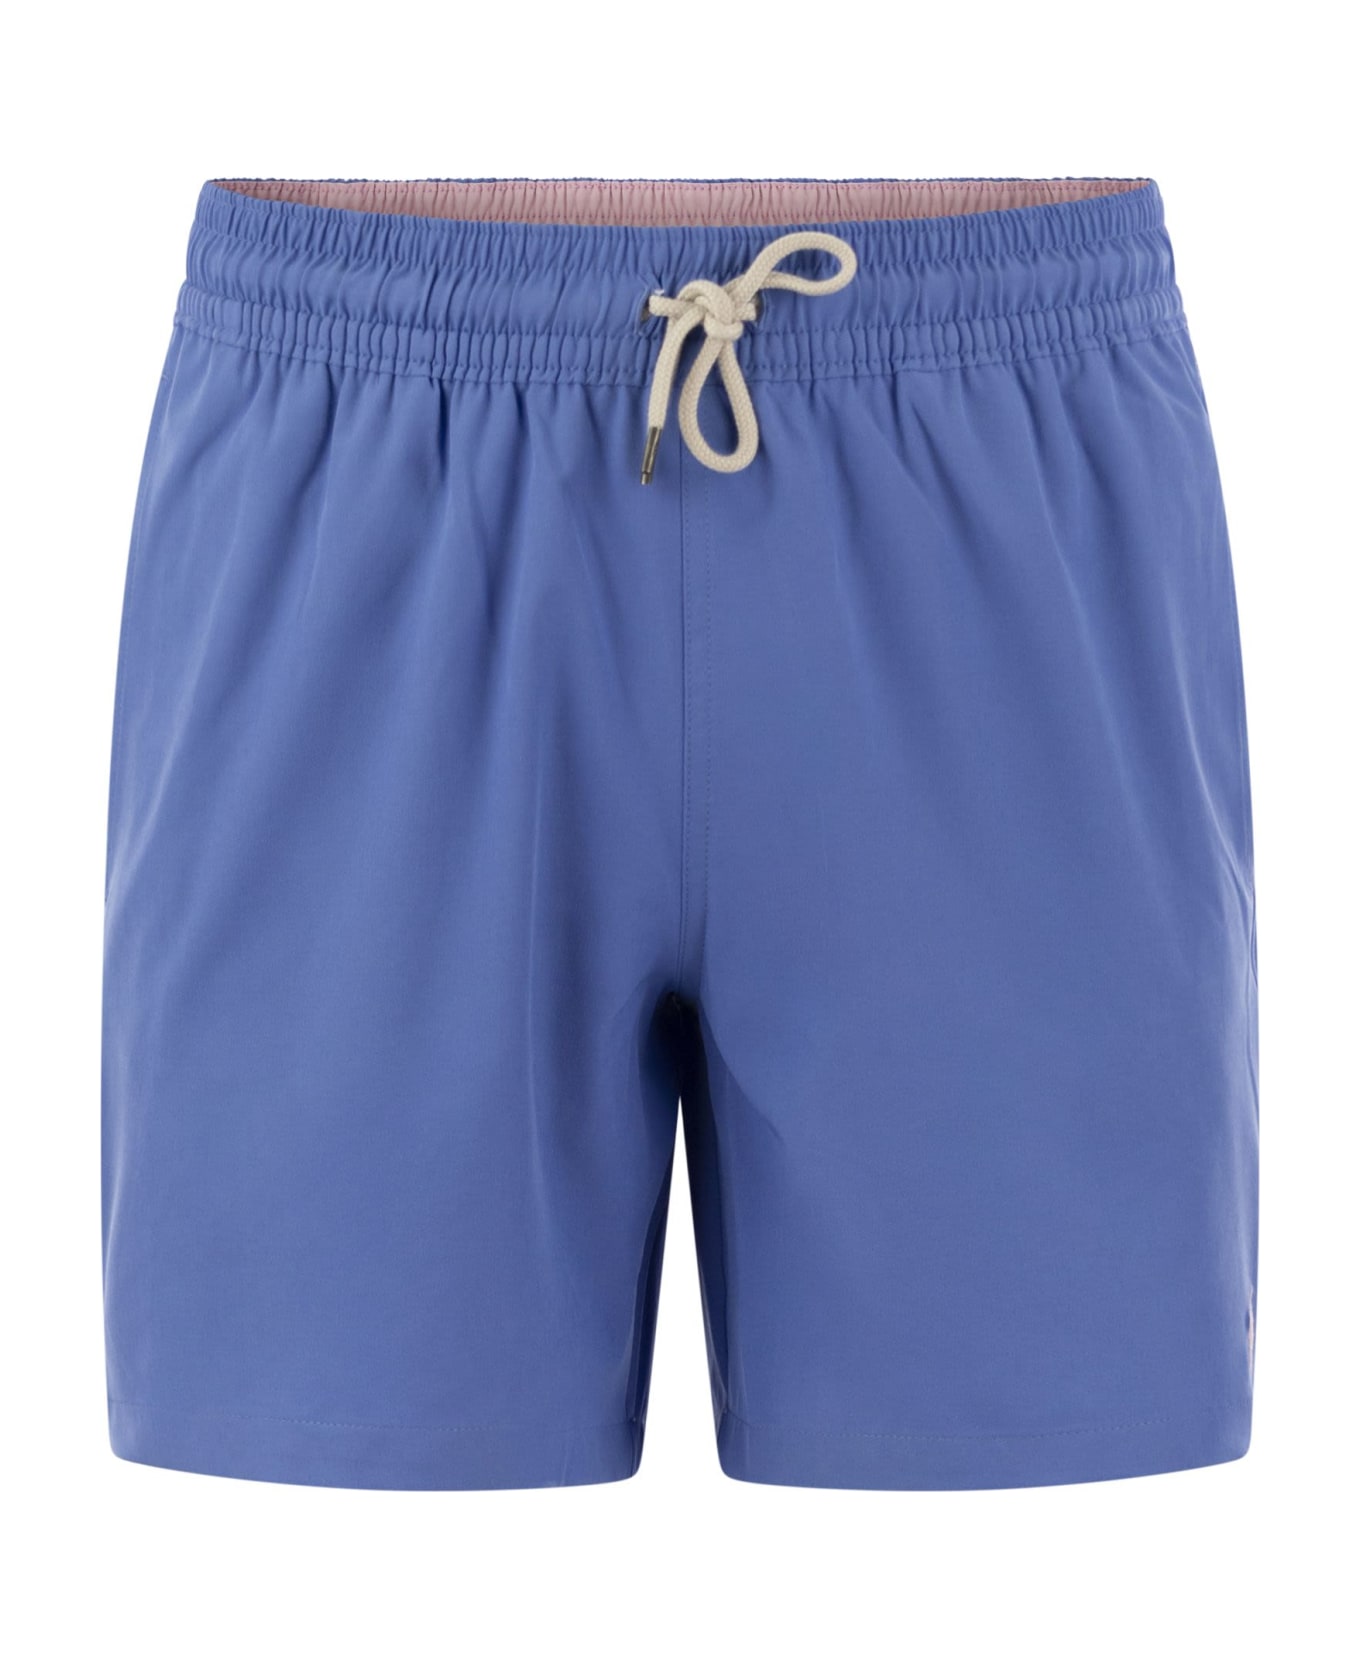 Polo Ralph Lauren 'traveler' Swim Shorts - Light Blue